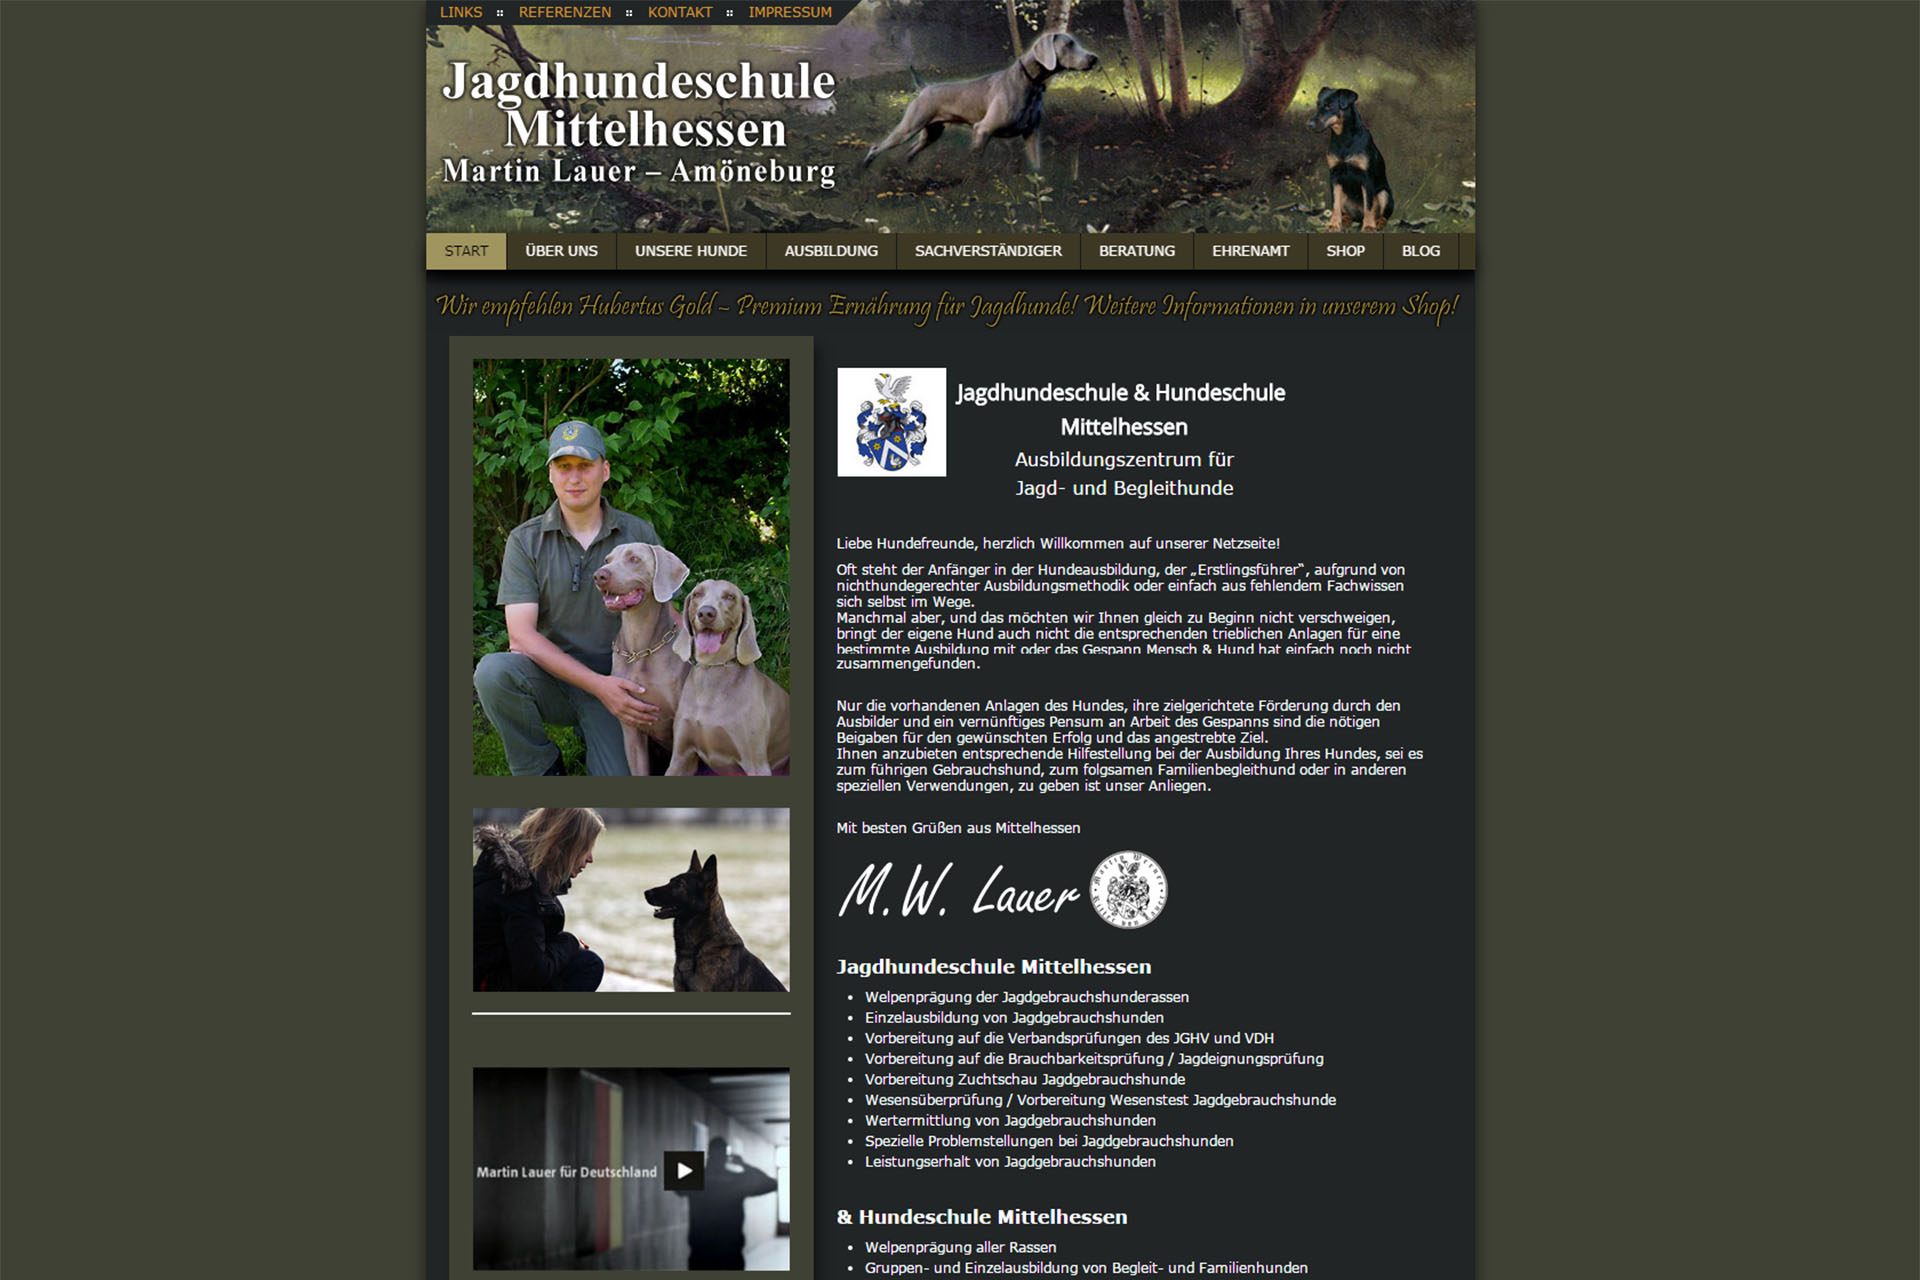 Jagdhundeschule & Hundeschule  Mittelhessen